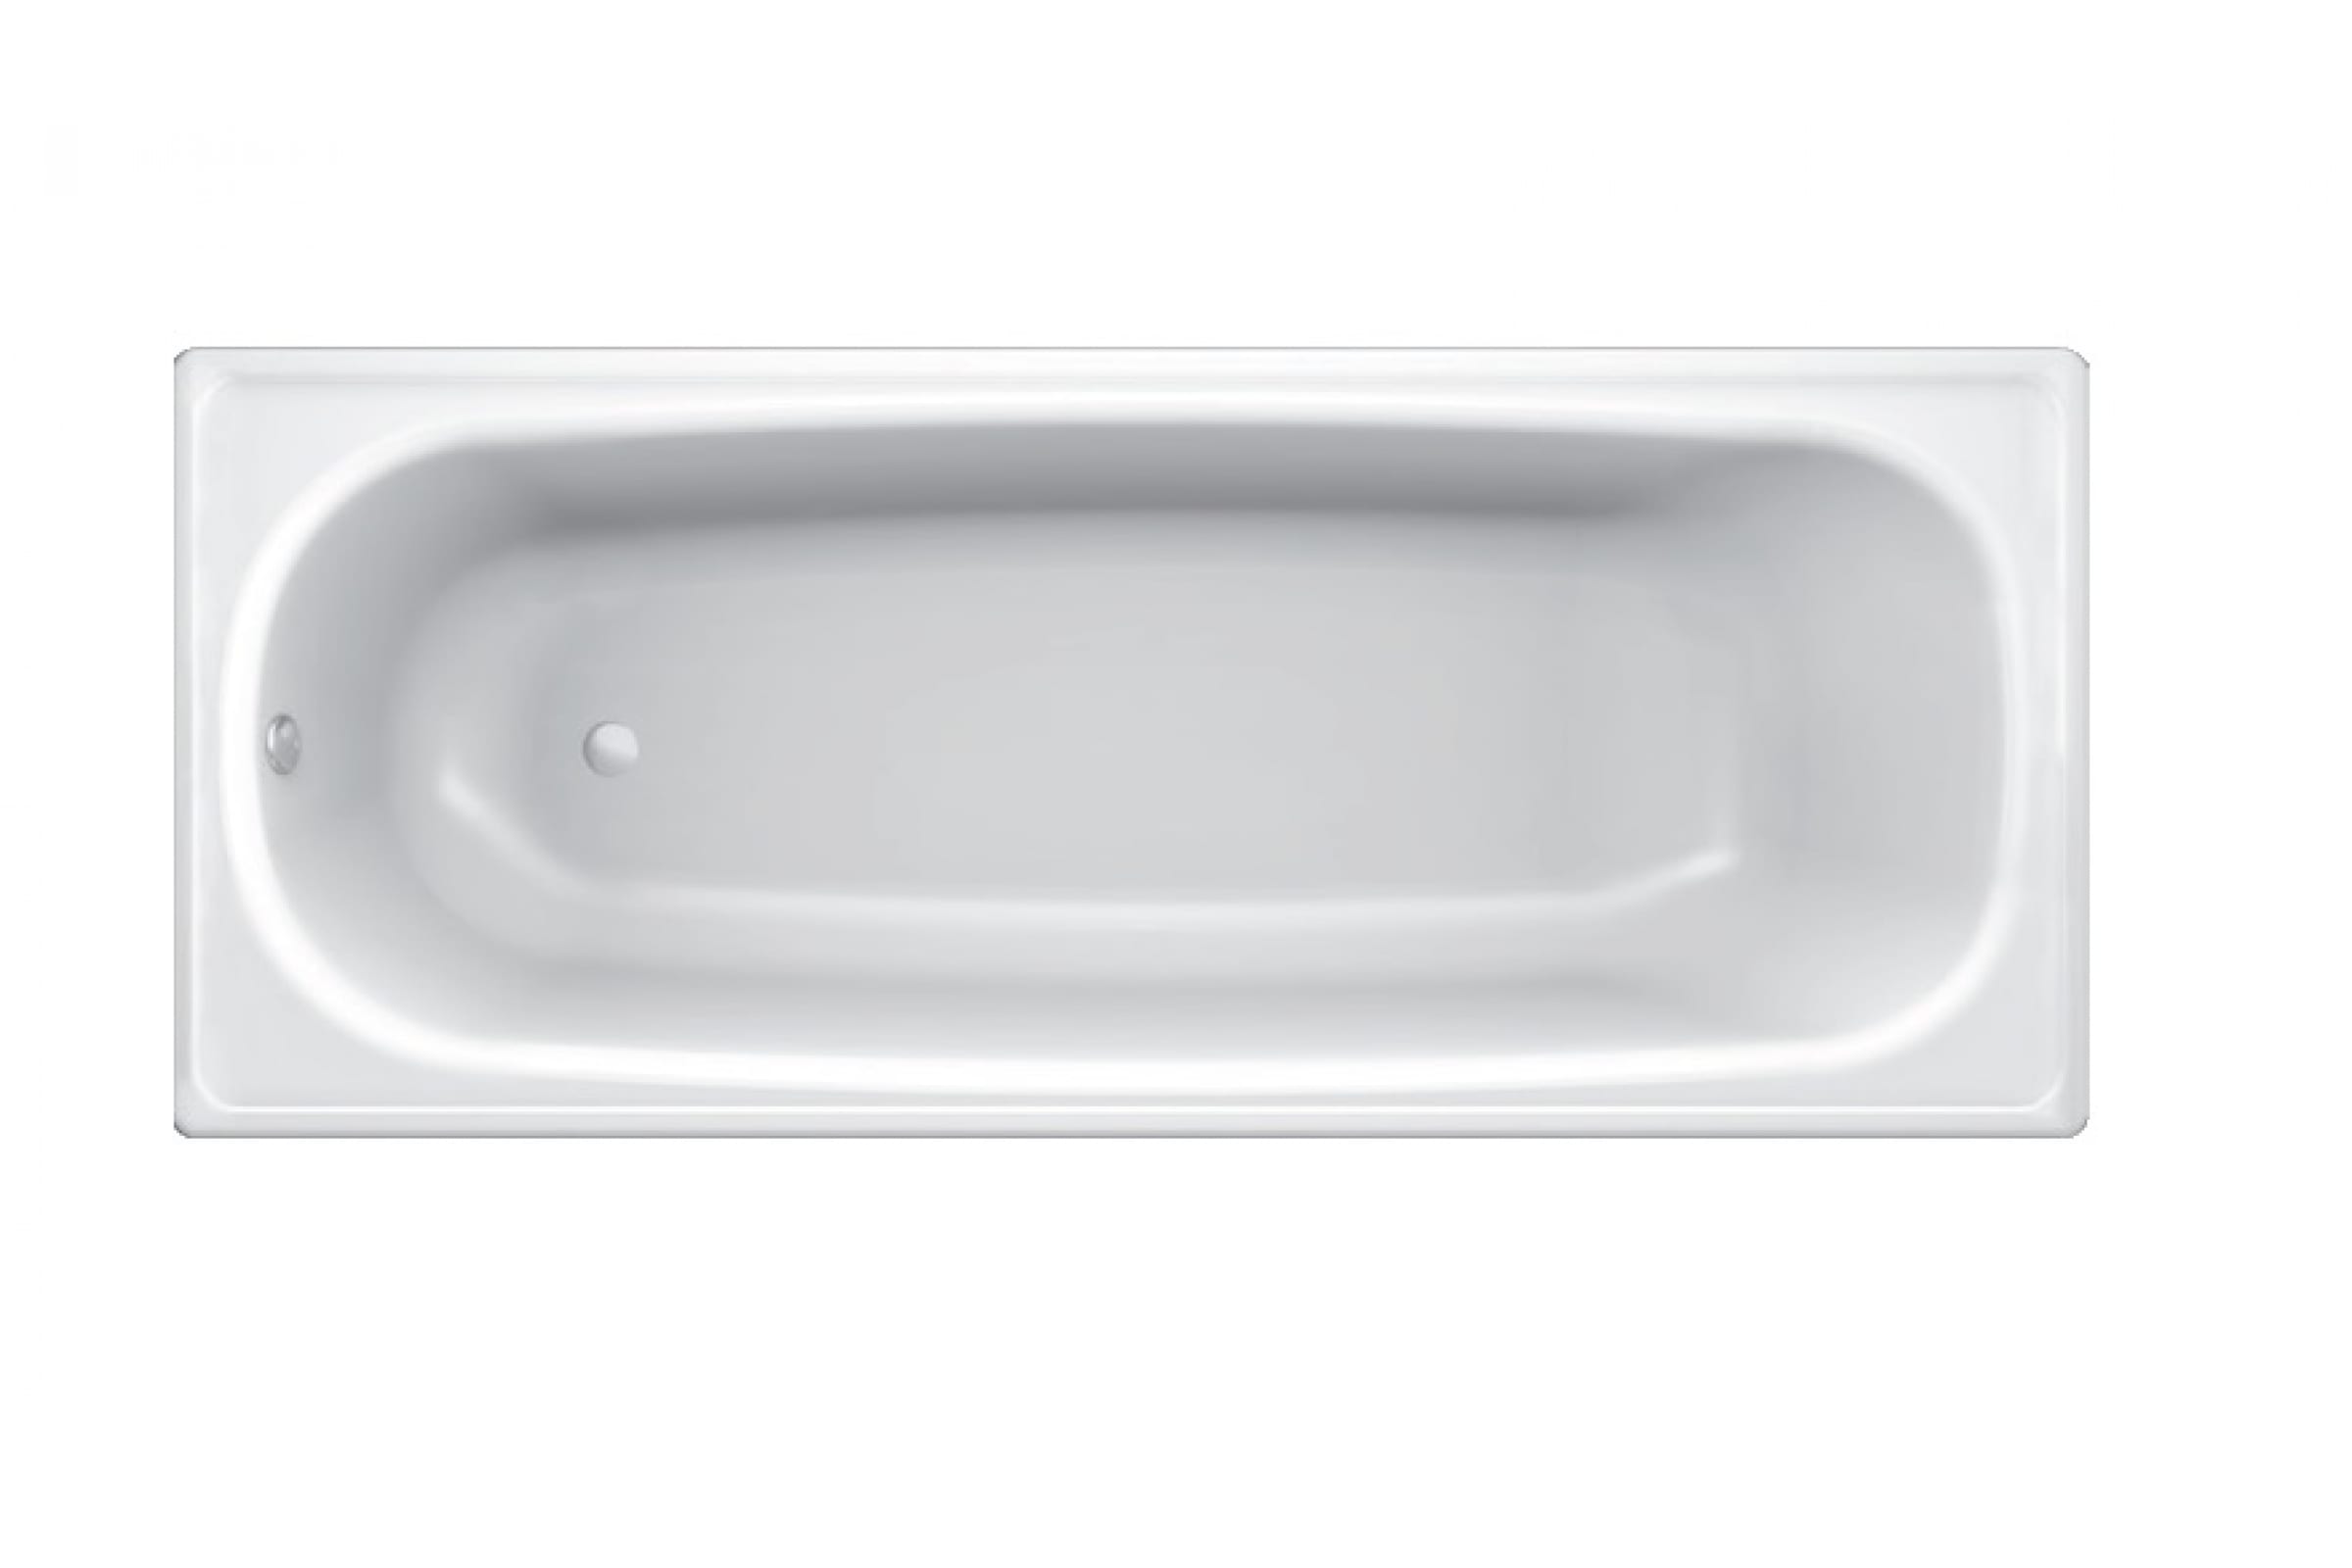 Стальная ванна blb hg. Ванна стальная BLB Universal HG 150х70 см 3.5. B70e1200e ванна стальная Koller Pool /170x70/ белый. Ванна стальная Universal HG 170*75 3,5мм+ножки, BLB. Ванна Блб универсал 170 70 ножки.